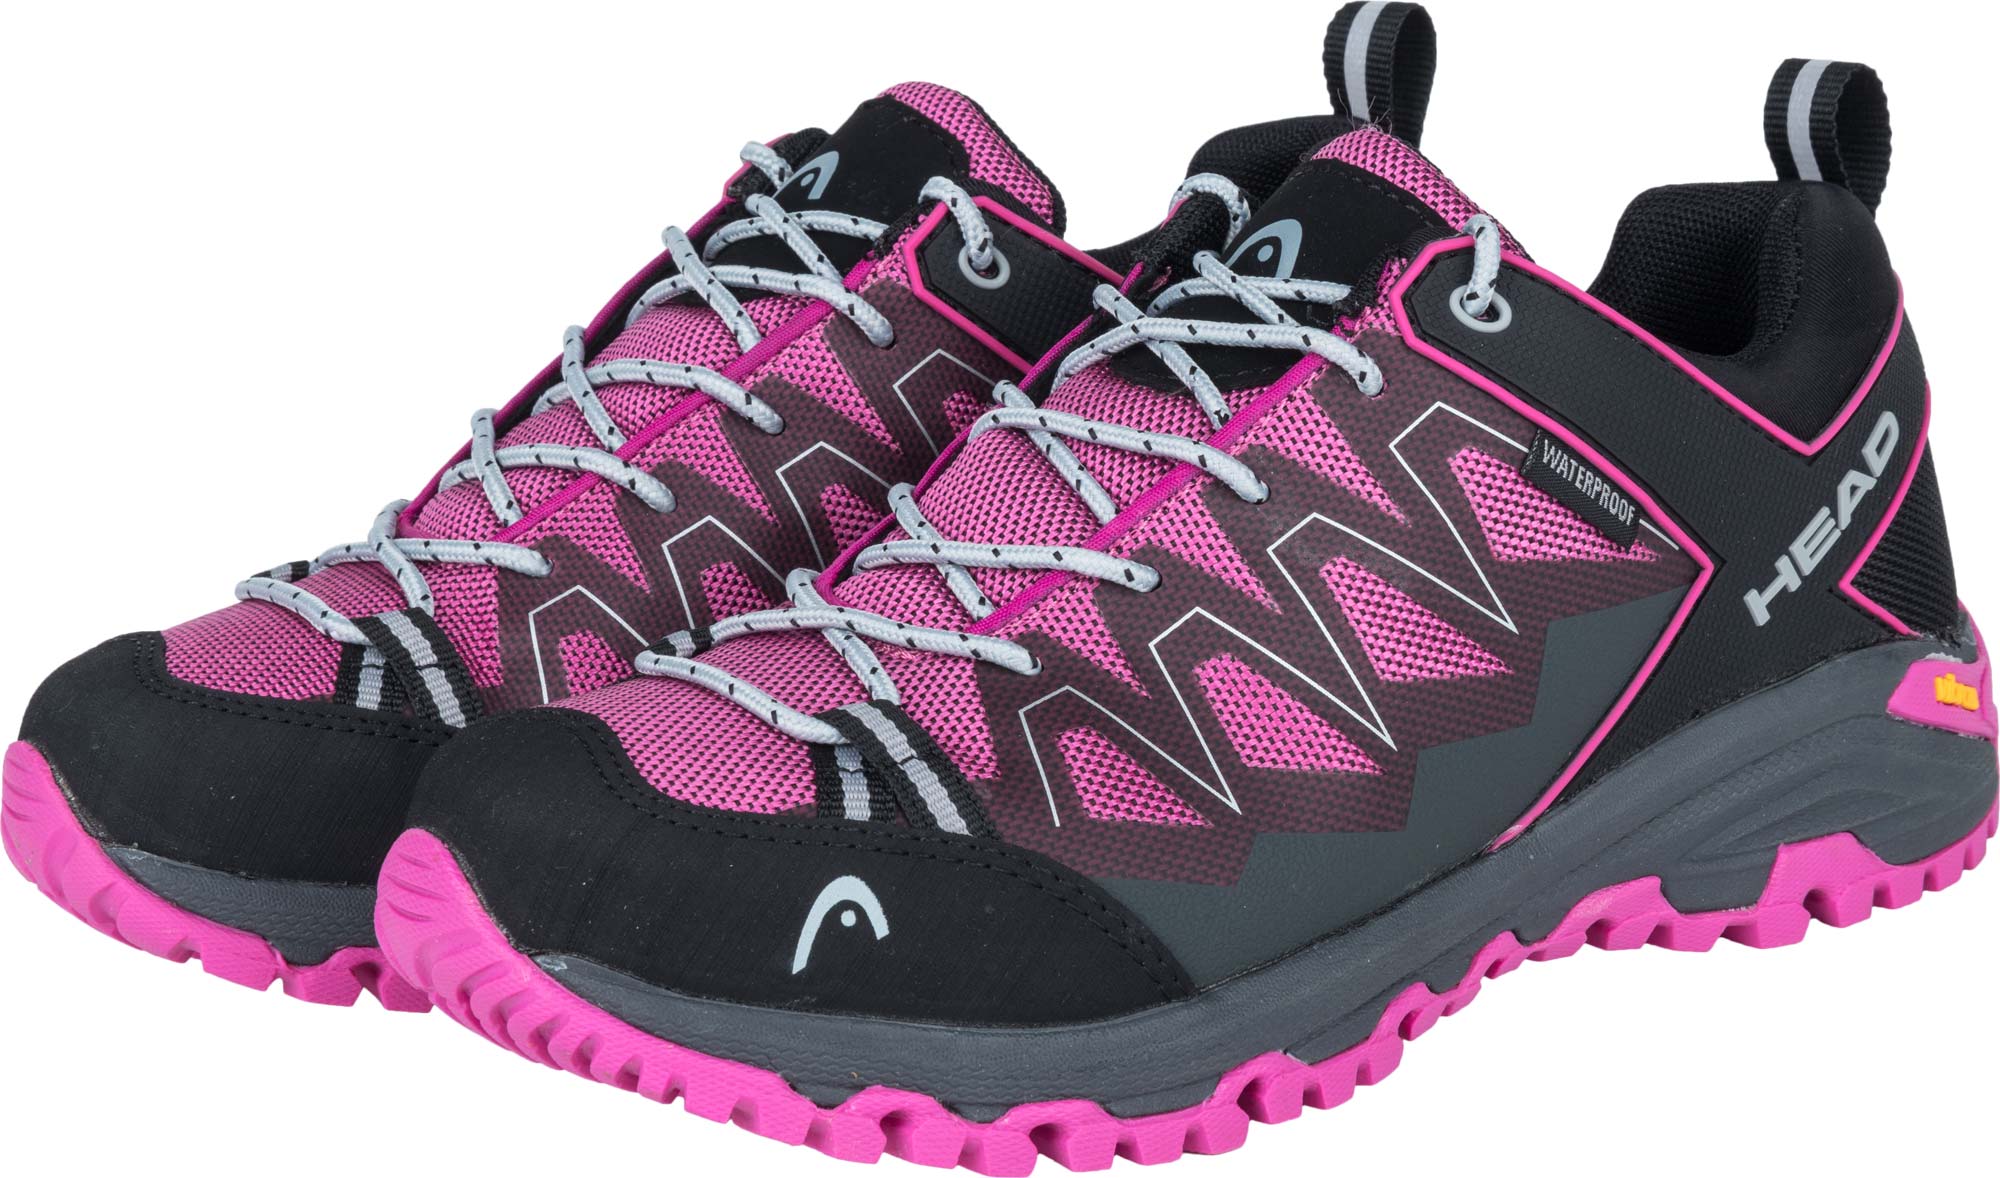 Women’s outdoor shoes